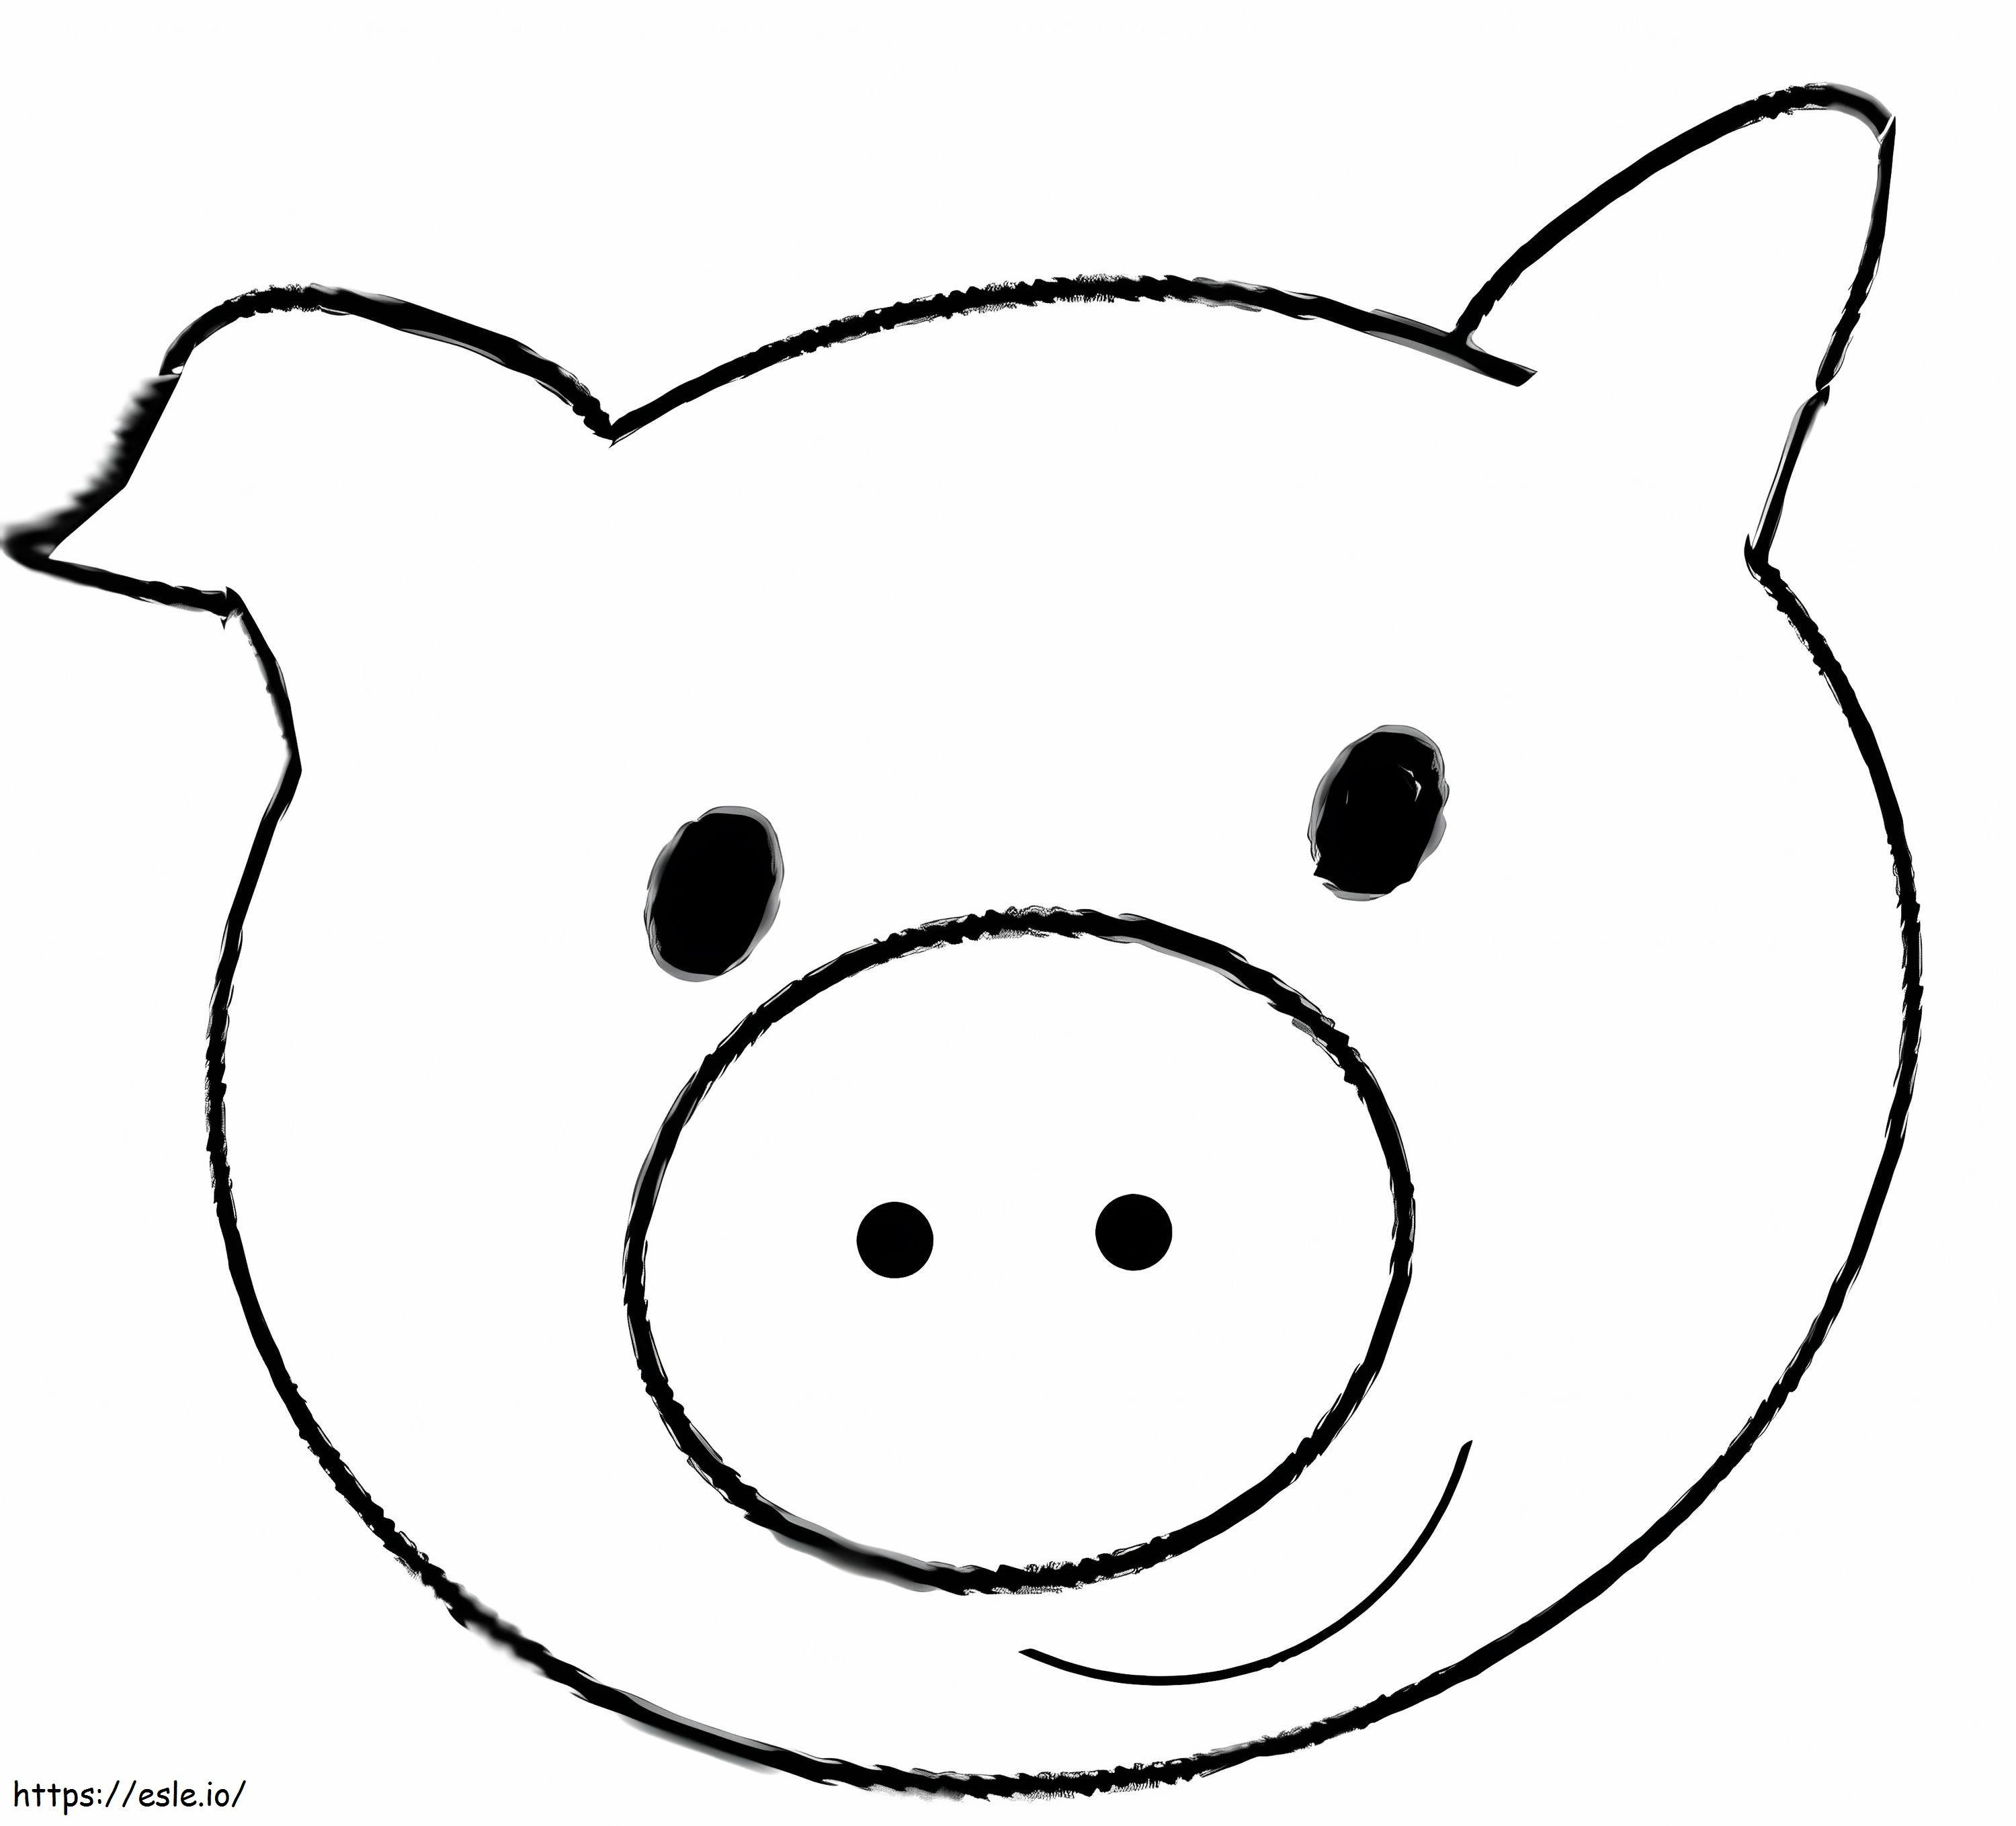 Niedliches Schweinegesicht ausmalbilder